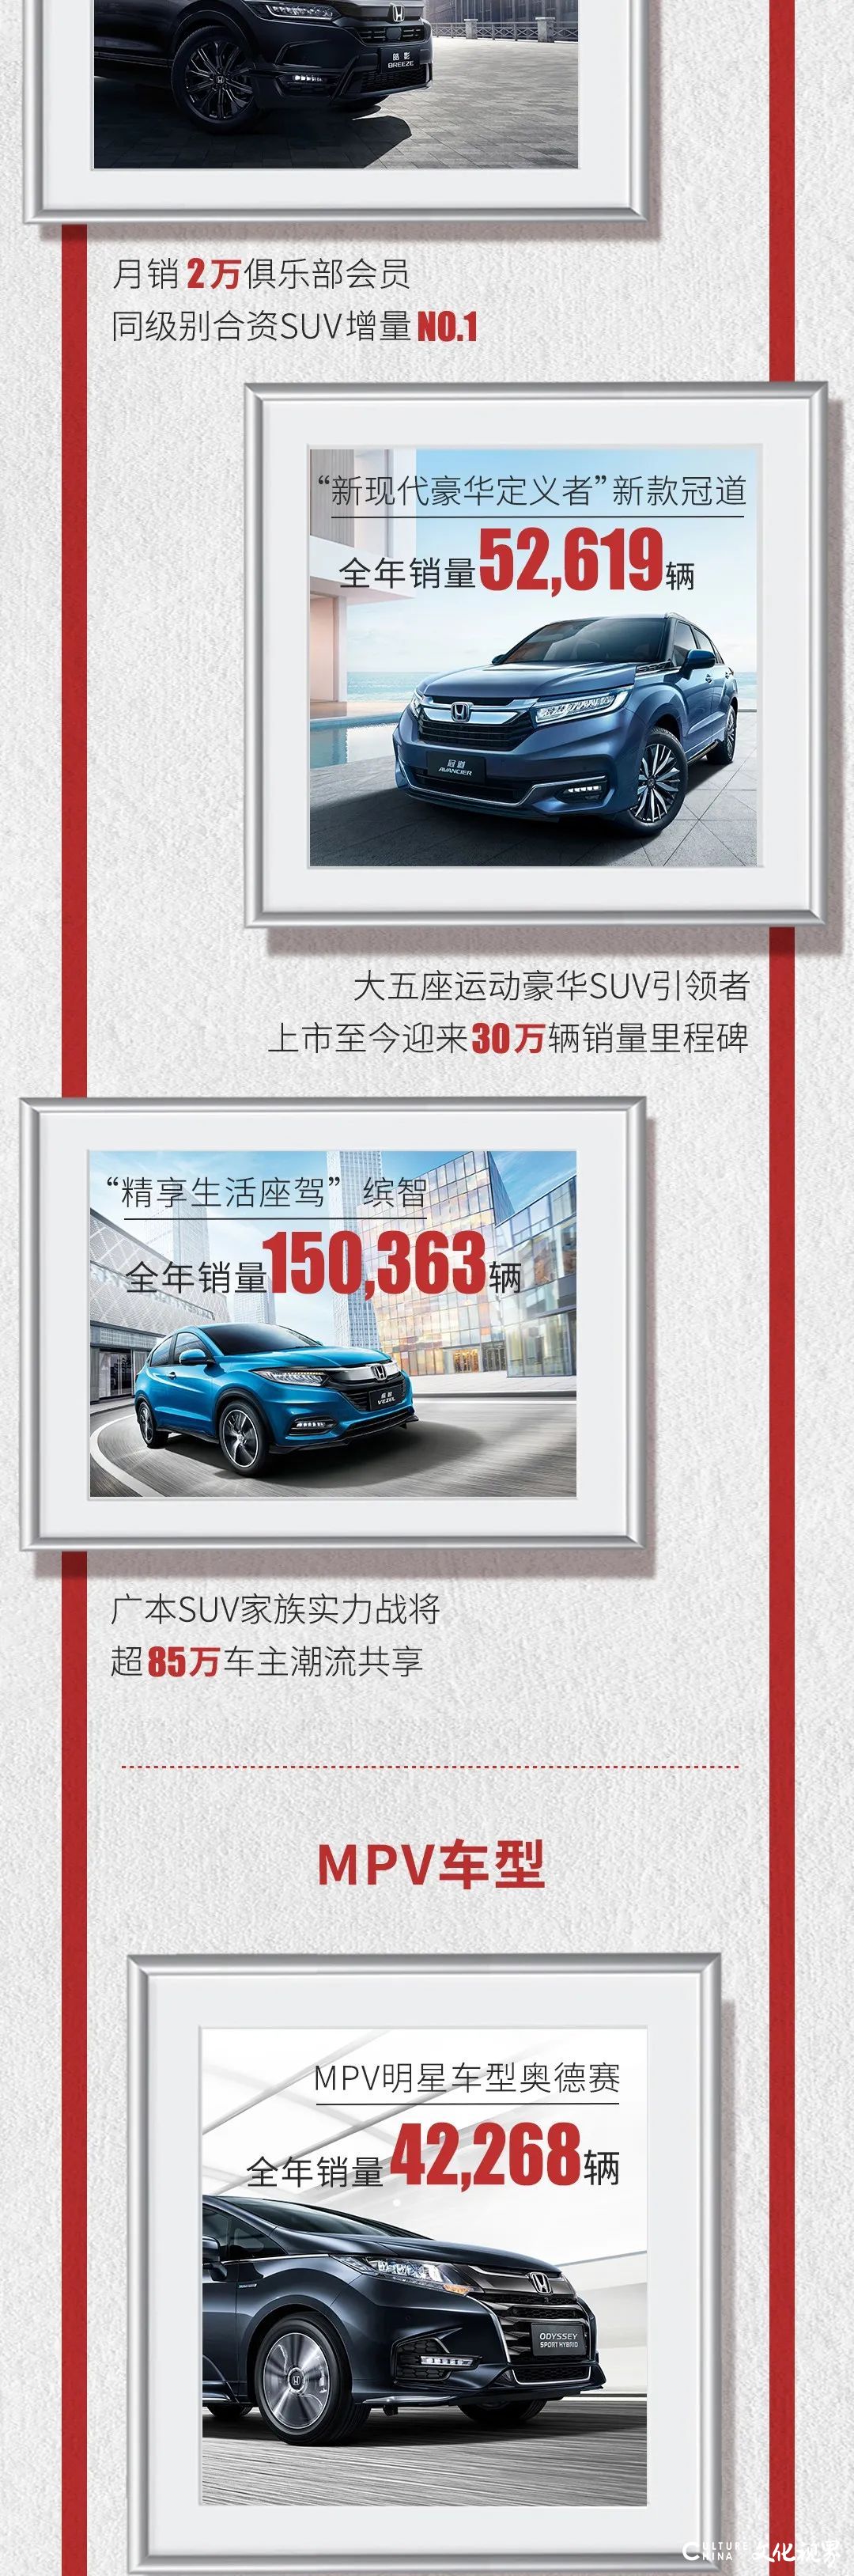 广汽本田2020年创纪录：发车、终端销量均突破80万辆